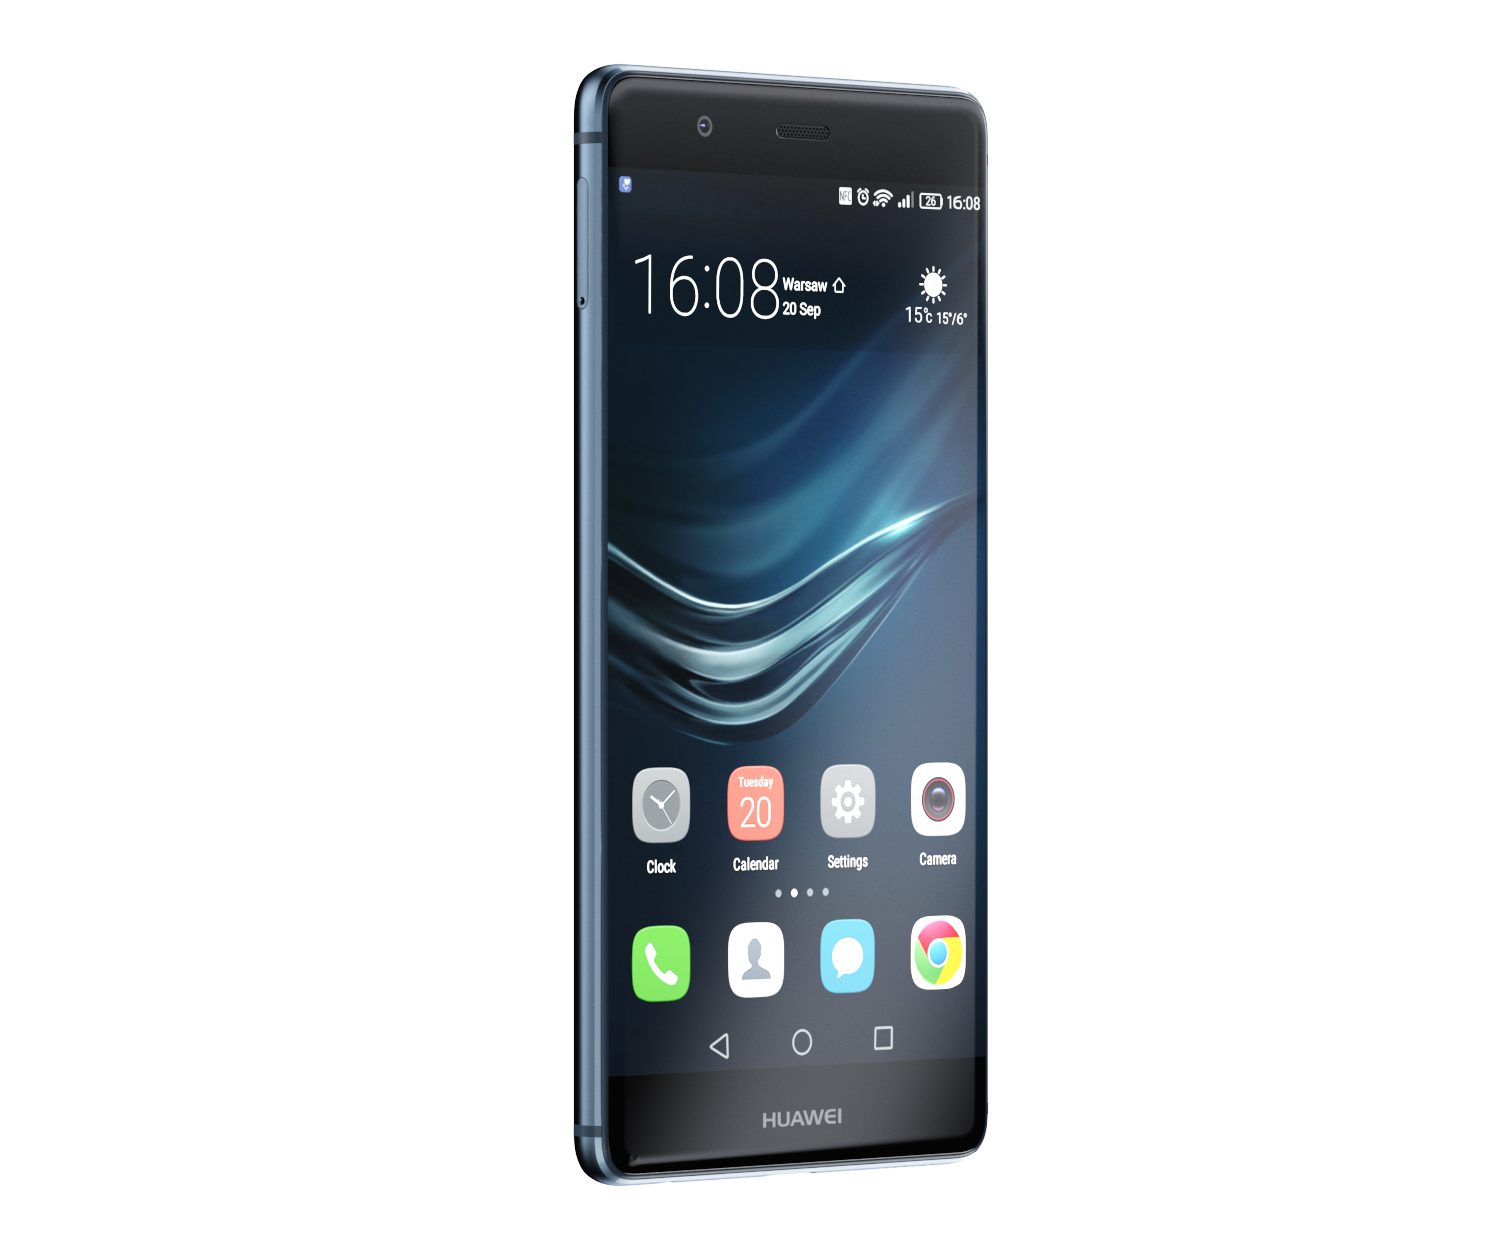 Huawei P9 Blue – jedinstveni pametni telefon